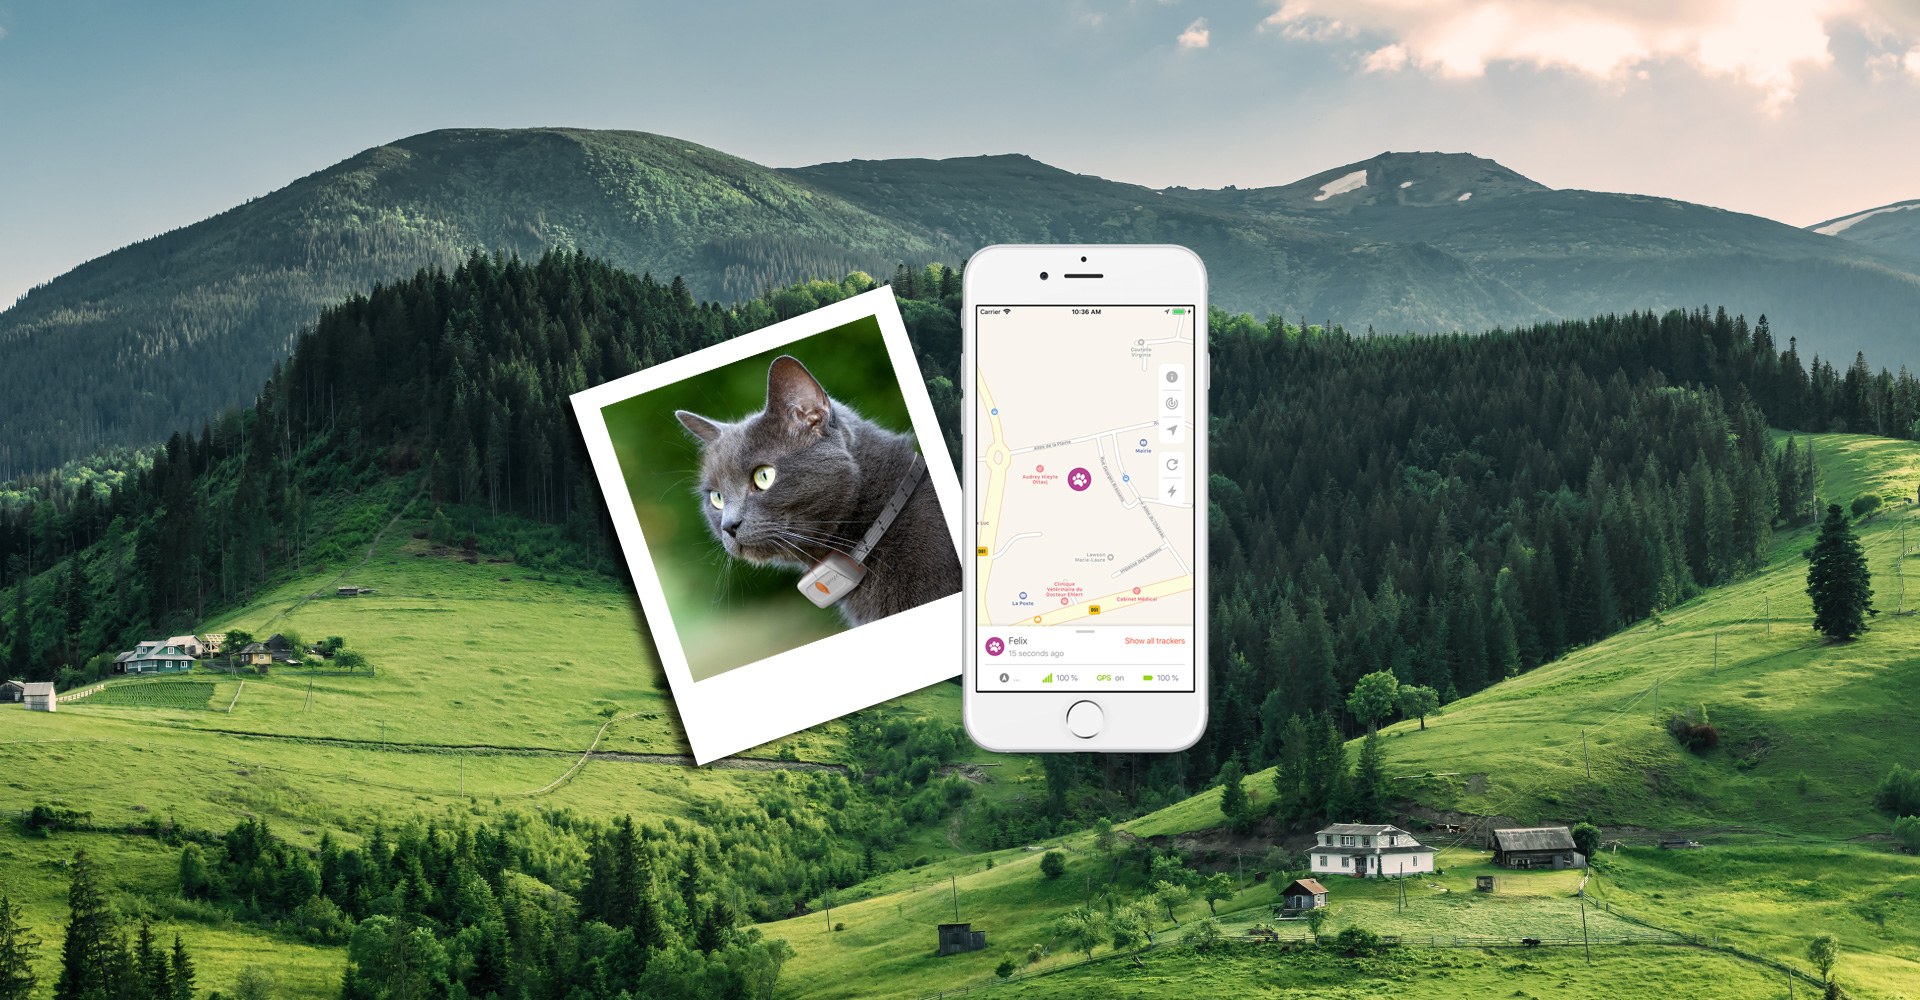 Weenect Cats 2 : Test complet de ce collier traceur GPS pour chat